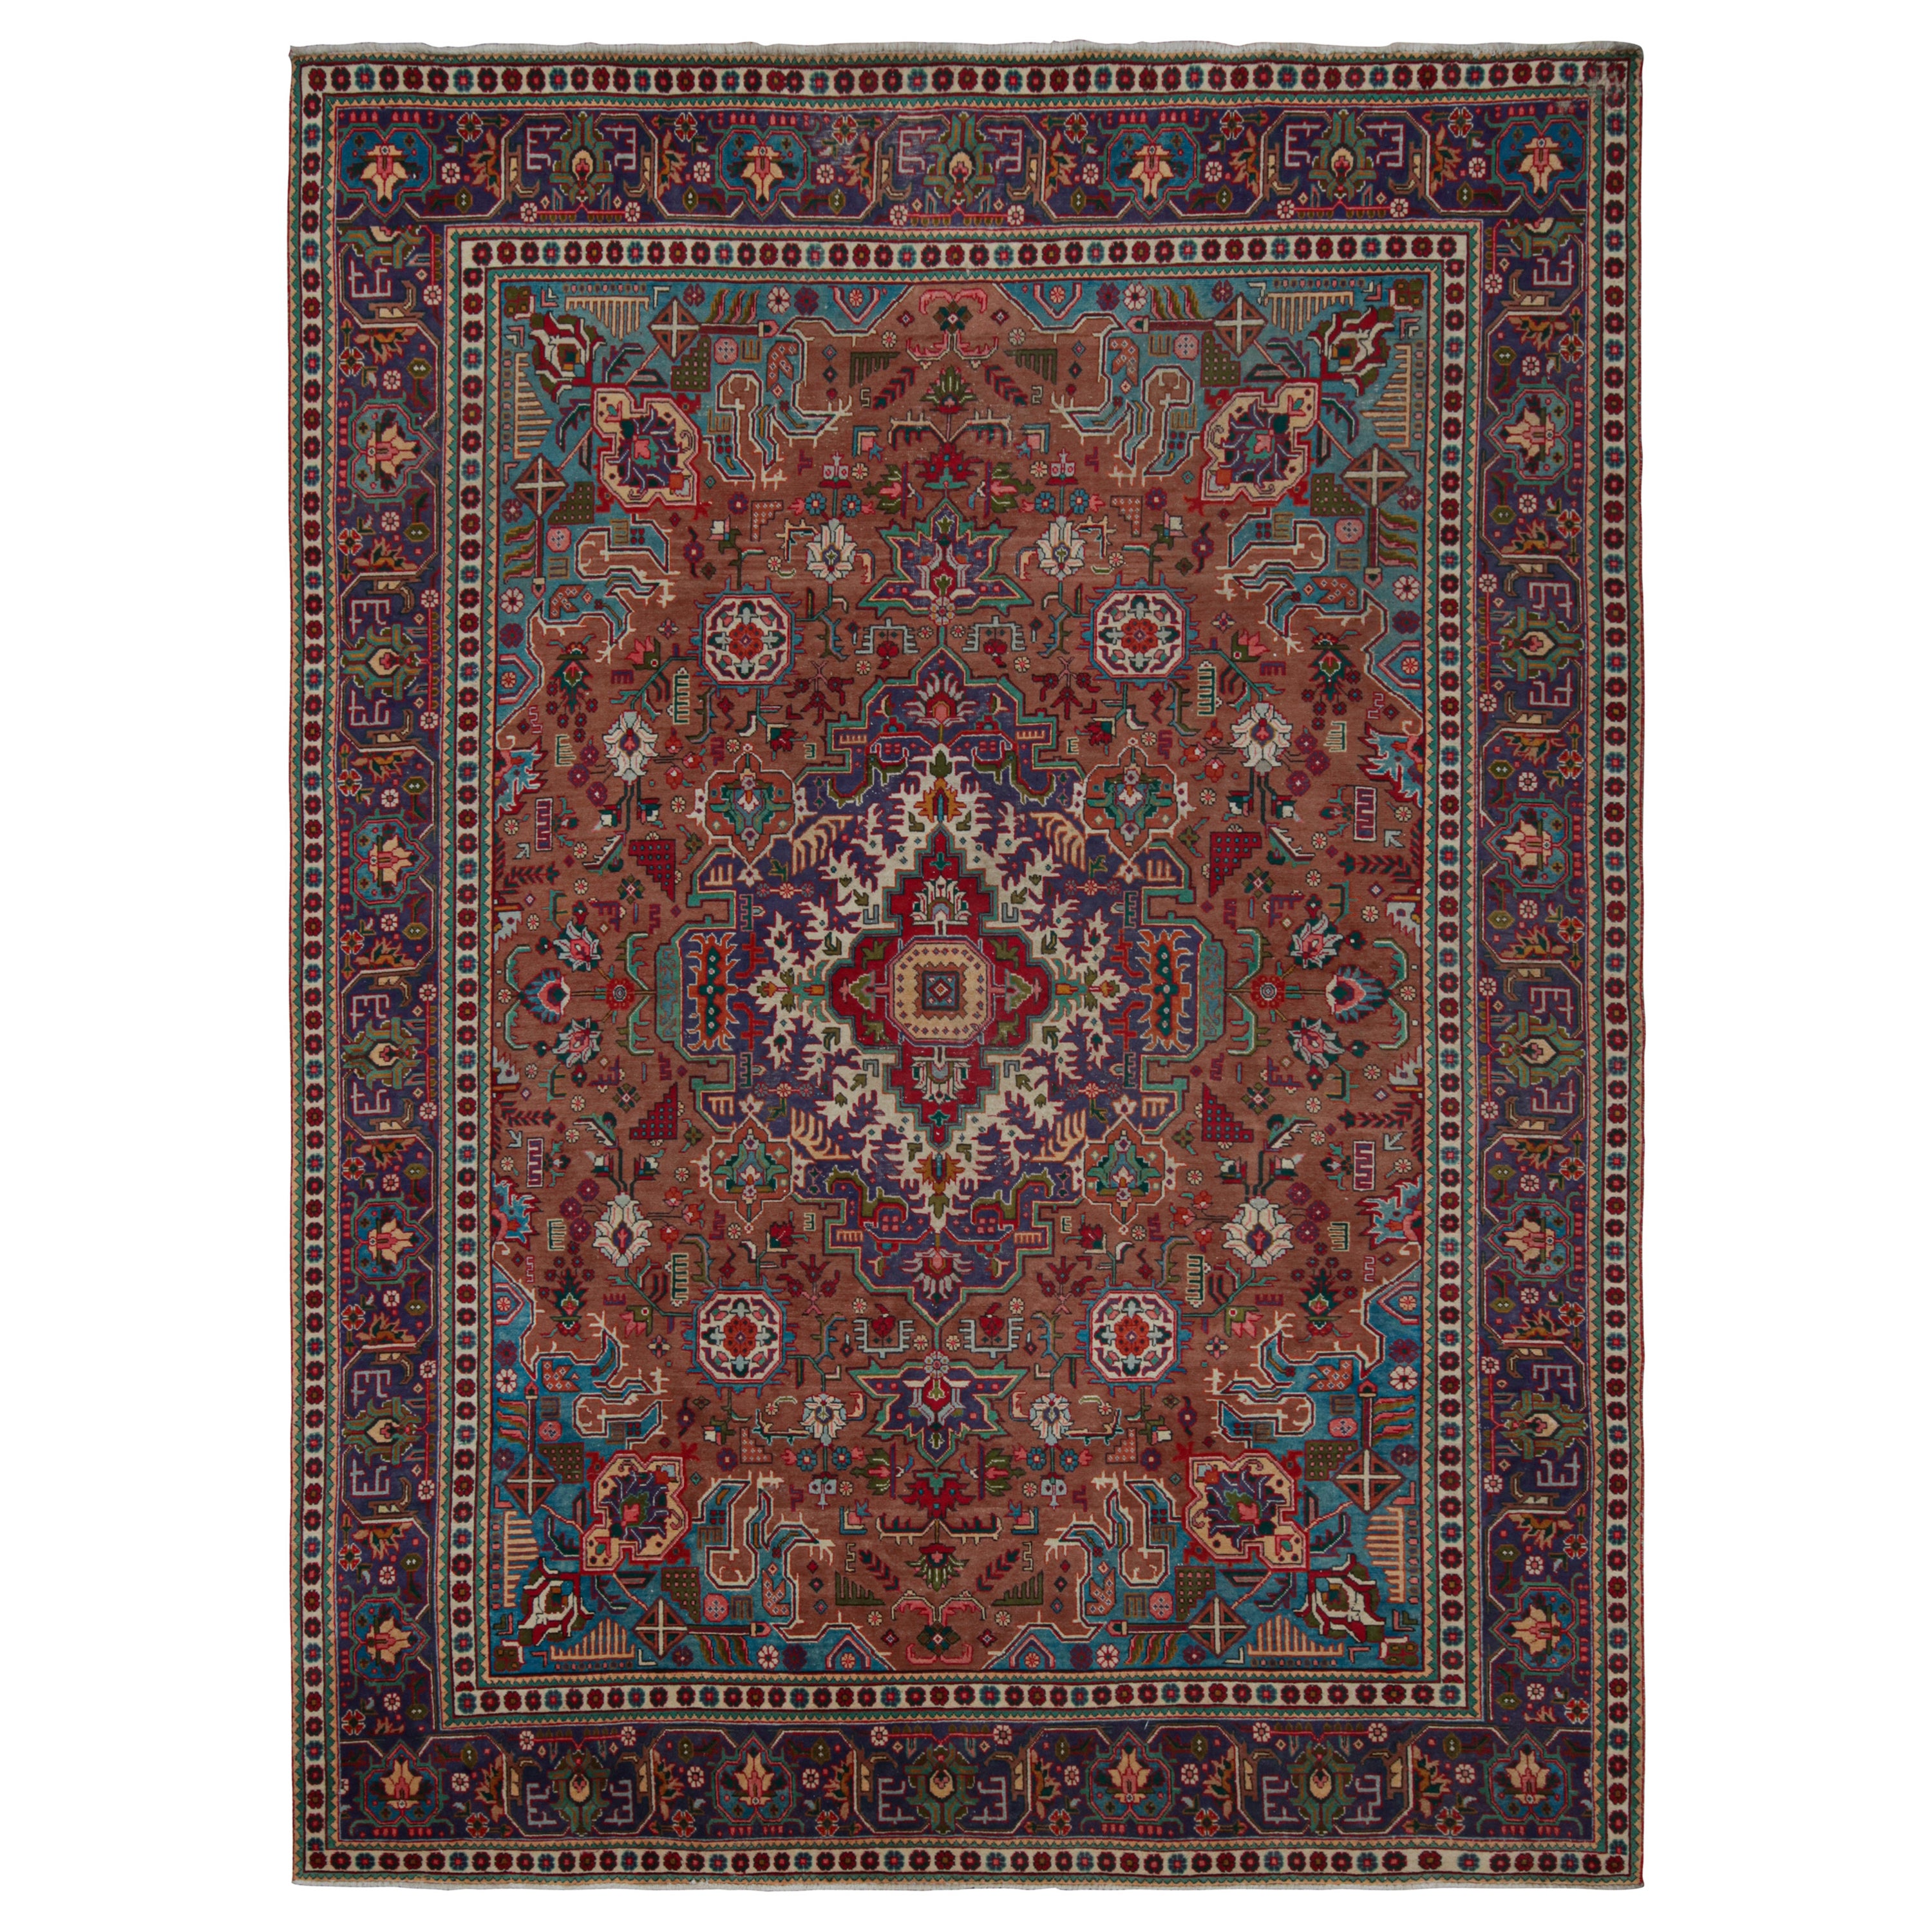 Vintage Persian rug in Indigo, Beige-Brown Patterns by Rug & Kilim For Sale